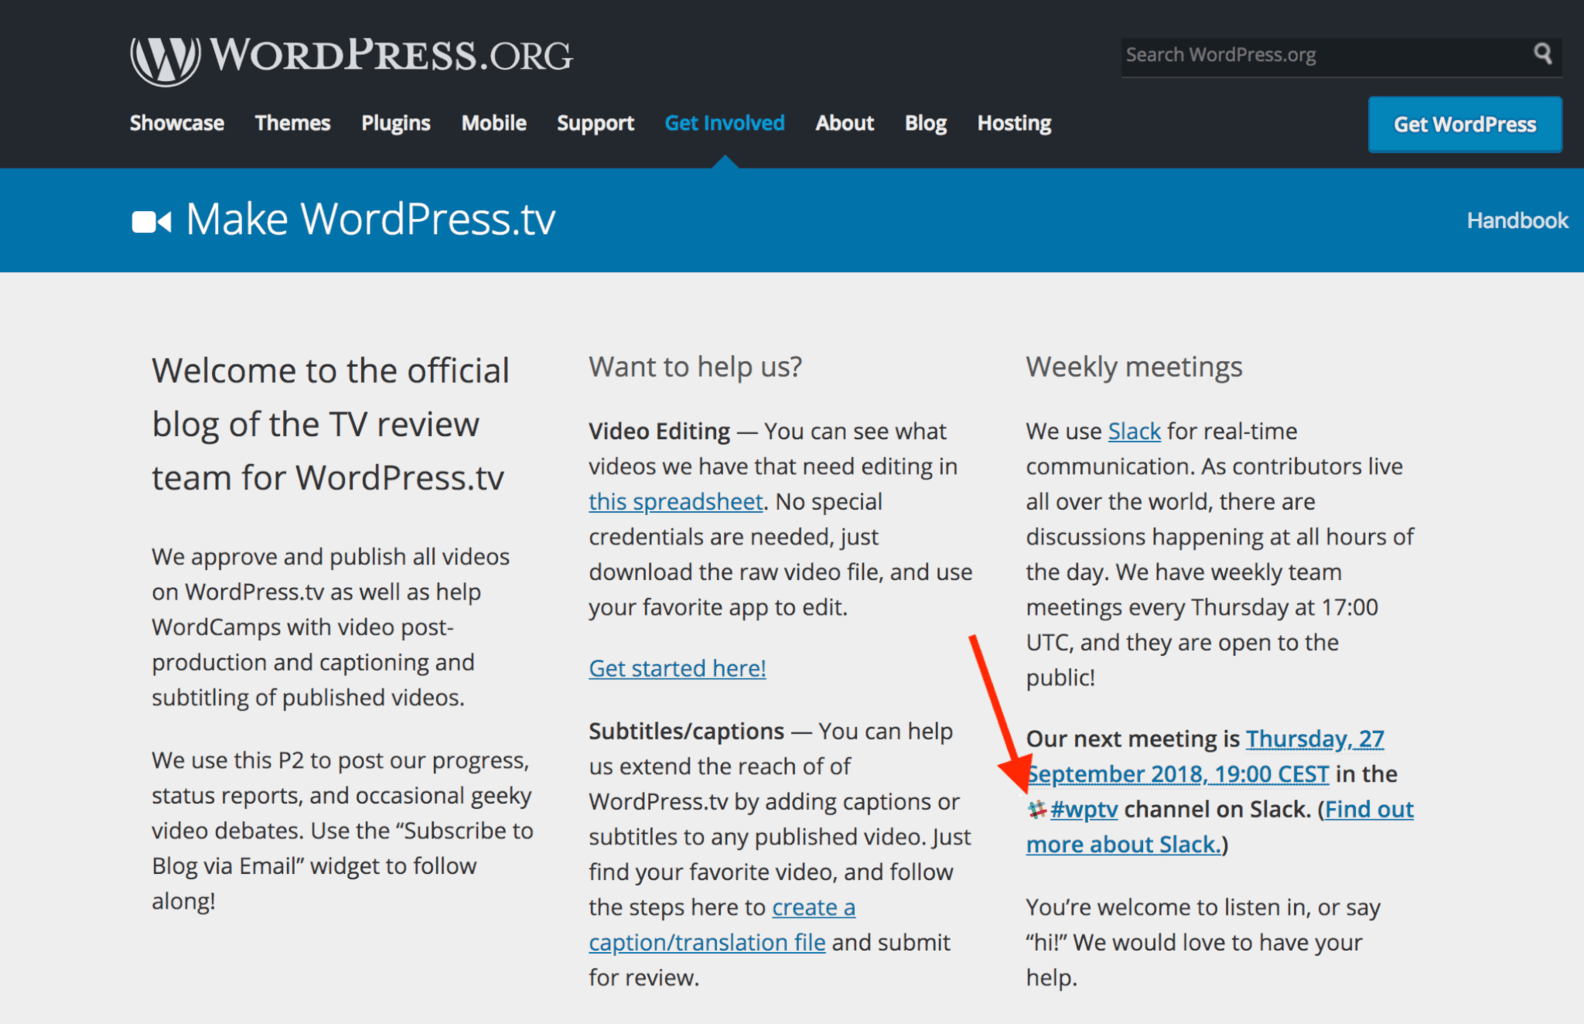 Mitwirken bei WordPress: In 3 Schritten zum WP-Contributor